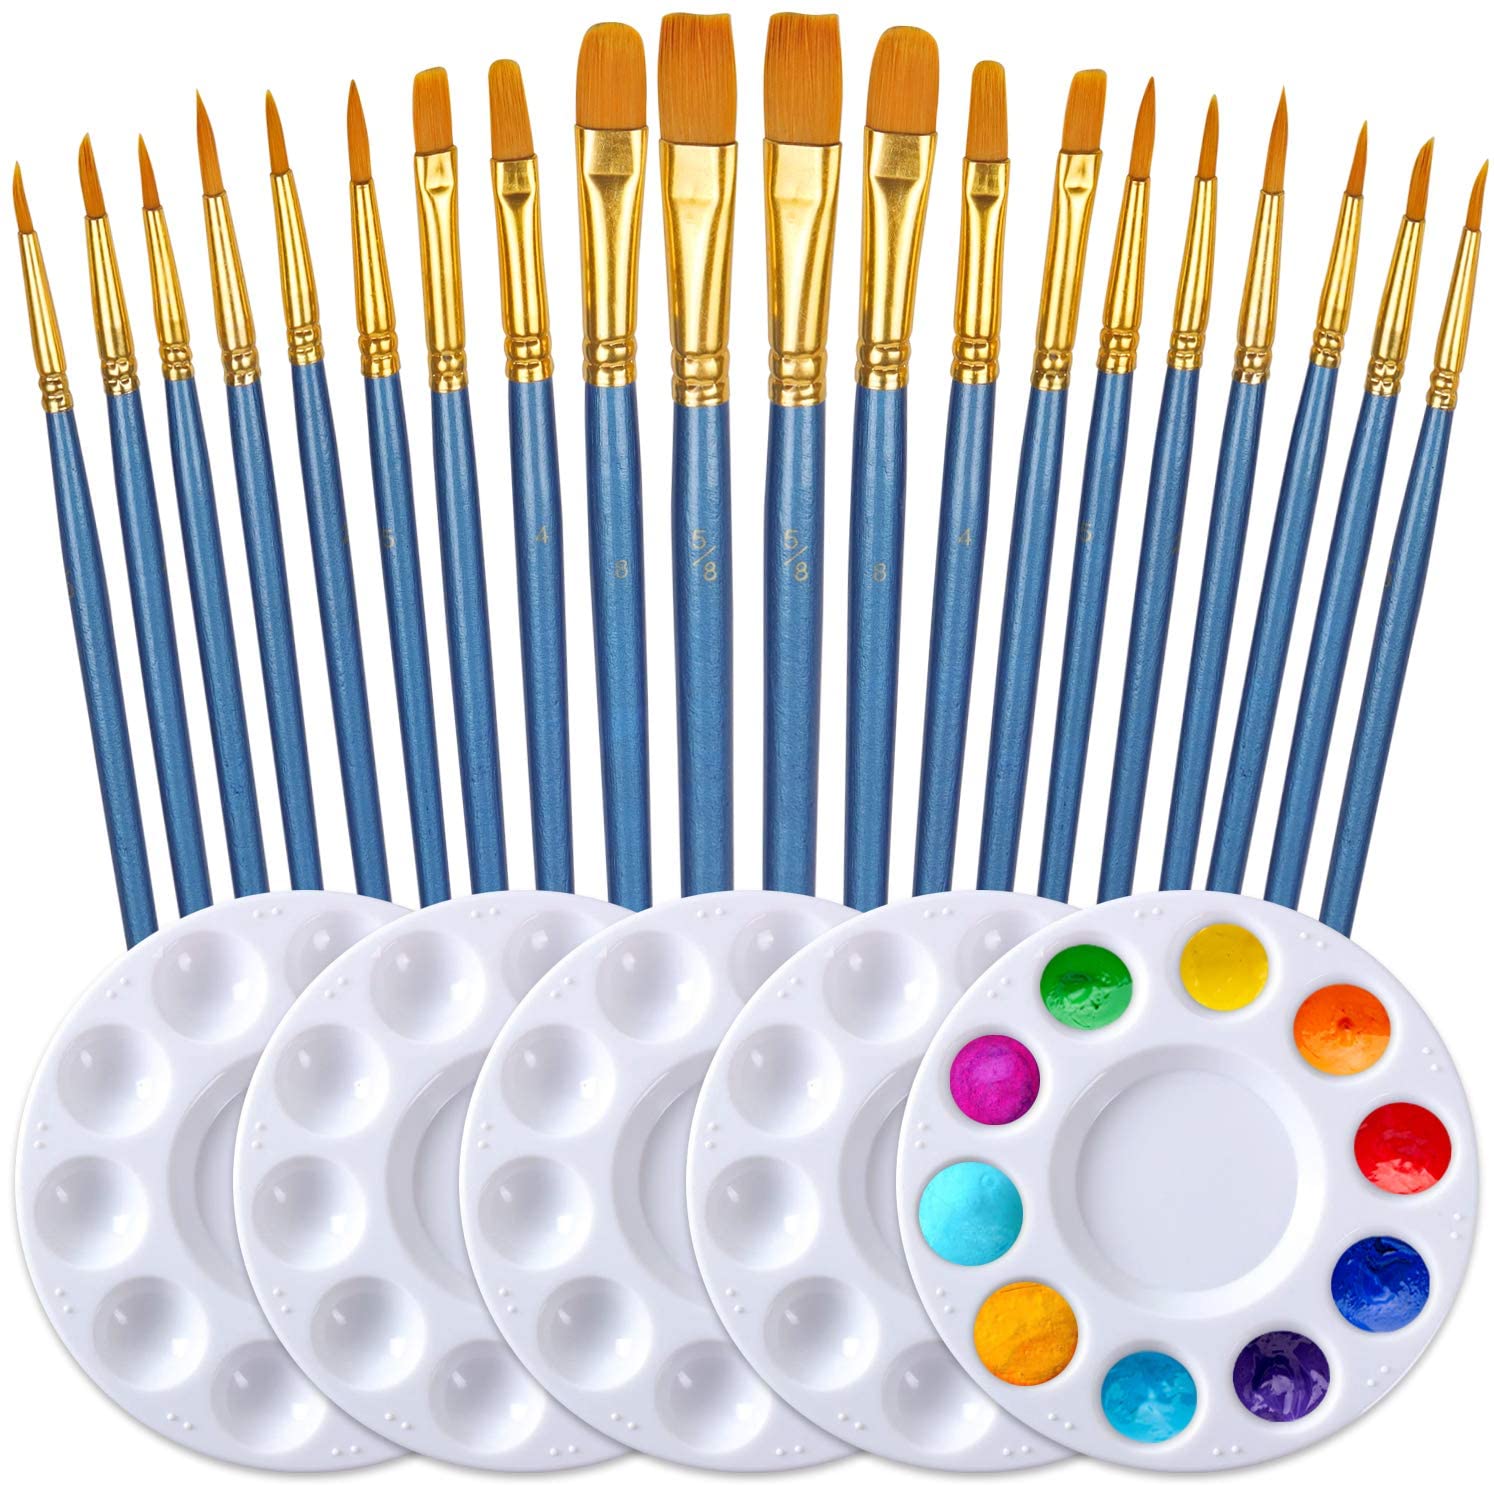 DUGATO Juego de 8 pinceles de pintura para detalles finos, kit de pinceles  de pintura micro miniatura profesional con mango ergonómico para acrílico